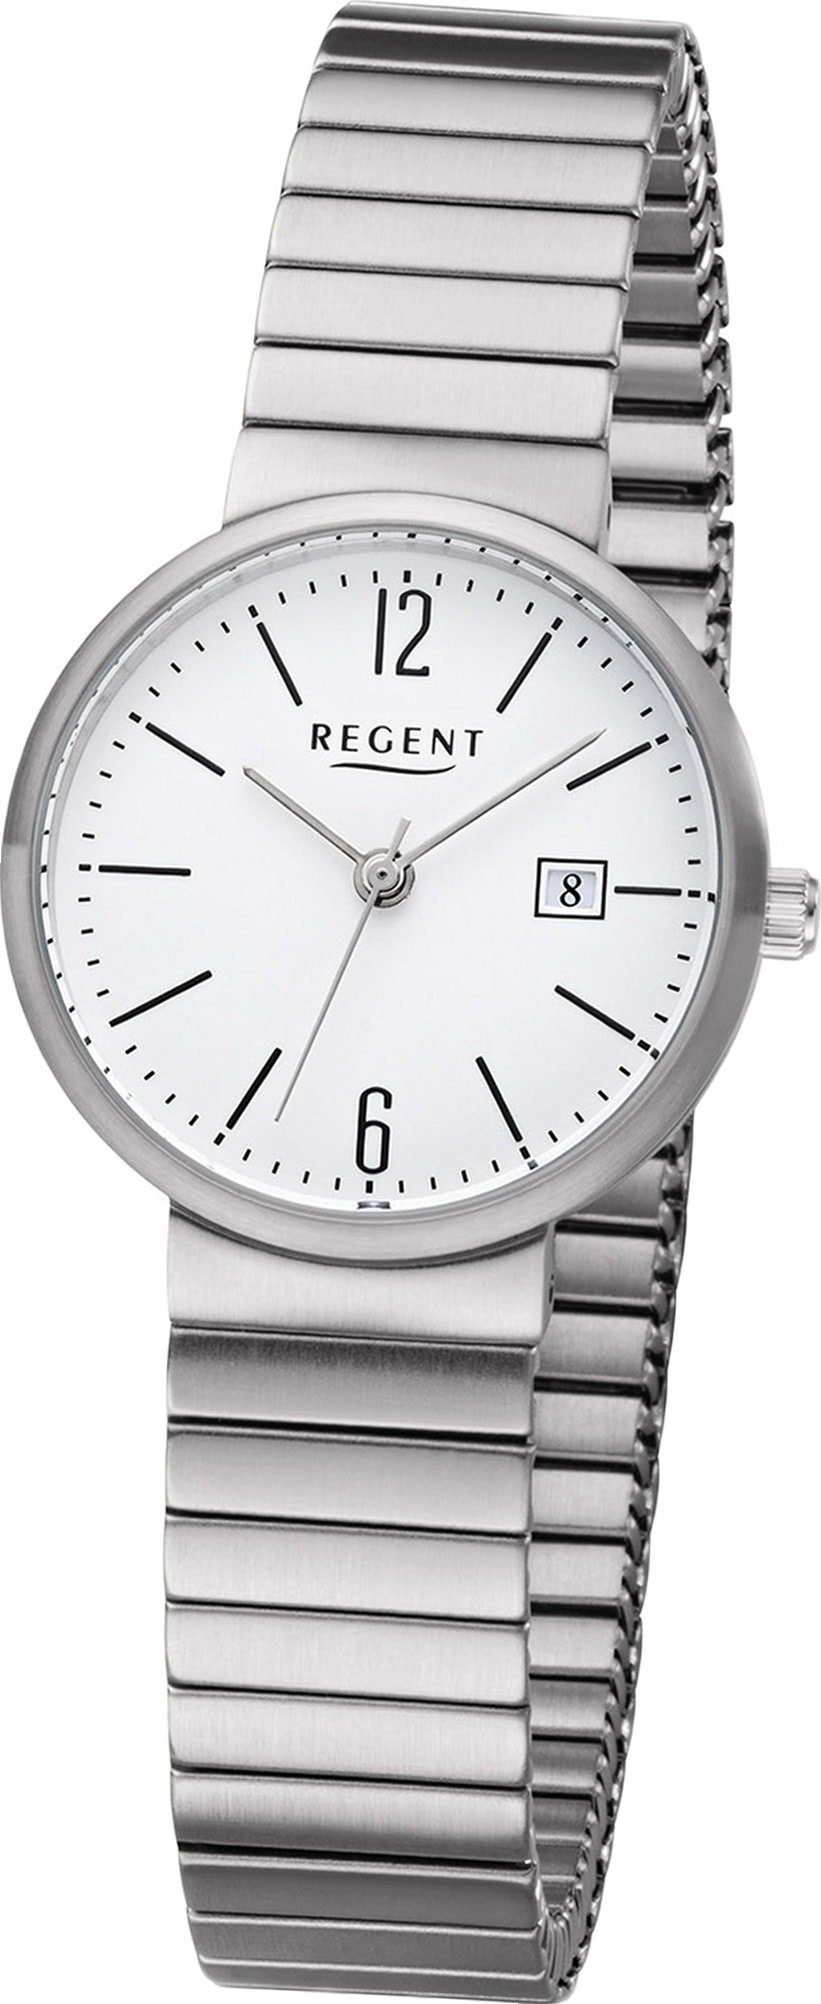 Regent Quarzuhr Regent Metall Damen Uhr F-1202 Analog, Damenuhr Metallarmband silber, rundes Gehäuse, klein (ca. 29mm)